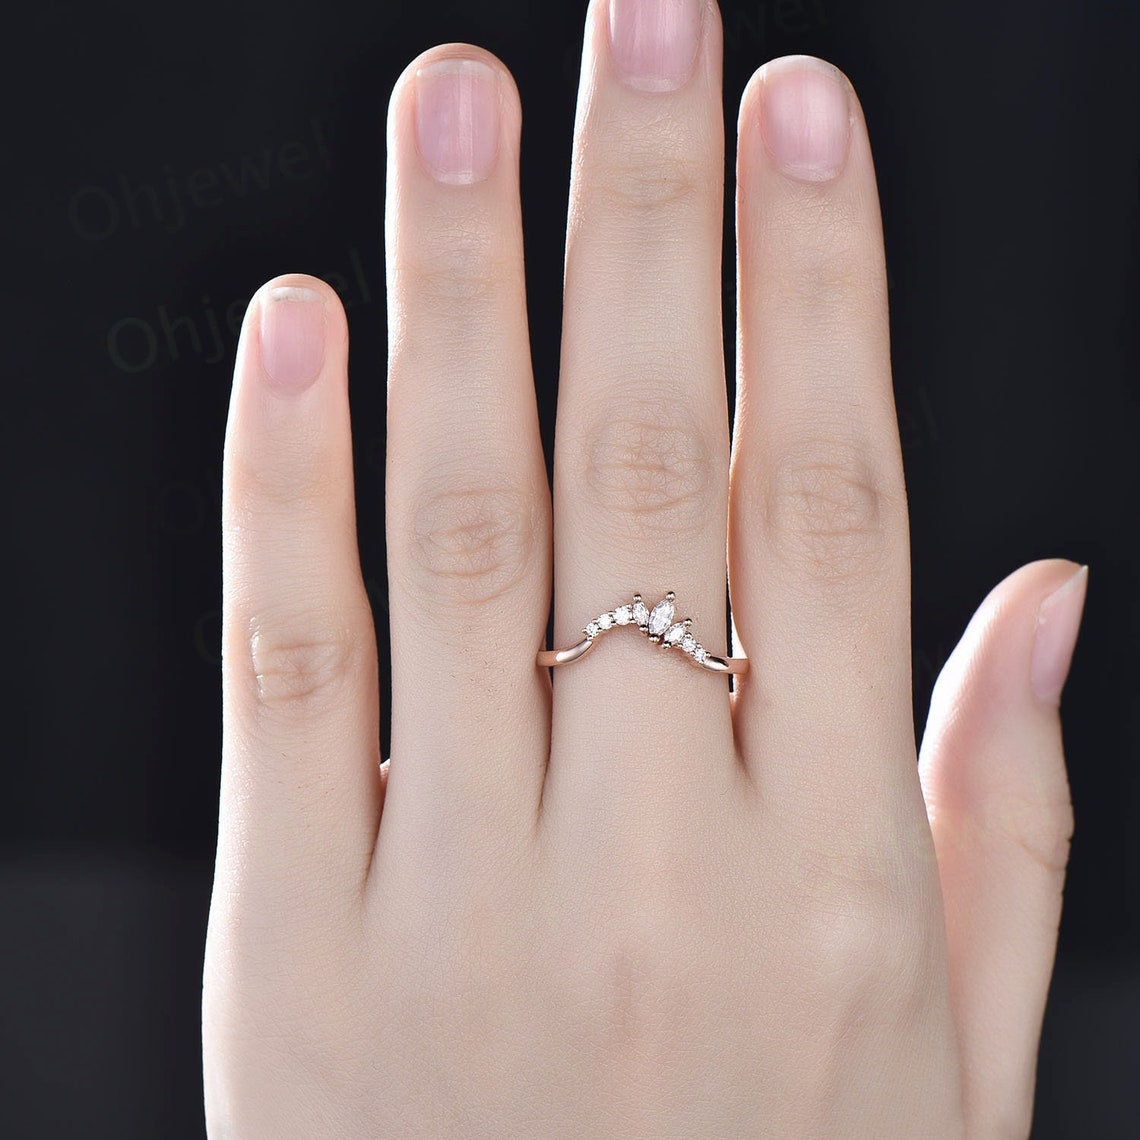 Fashion Finger Ring Women | Women Knuckle Fashion Rings | Finger Rings Women  Jewelry - Rings - Aliexpress